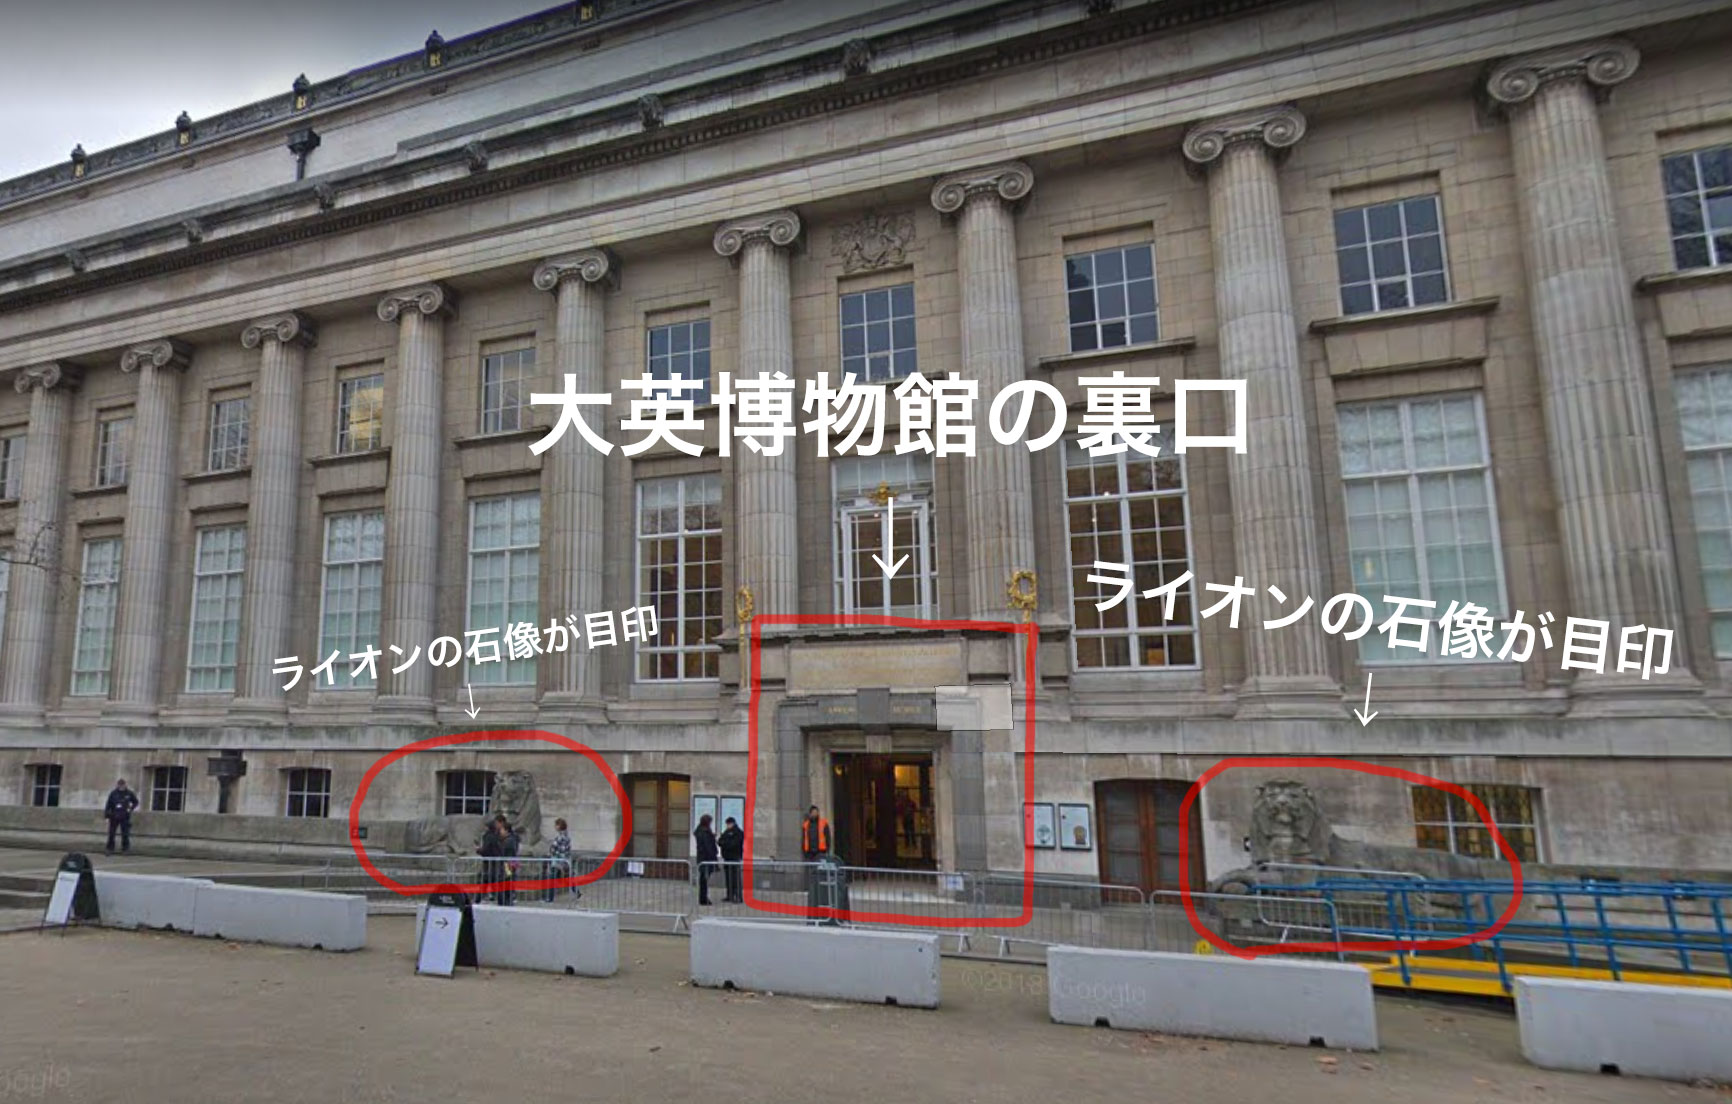 大英博物館で待たずに入れる裏口の正確な場所【Google Map付き】